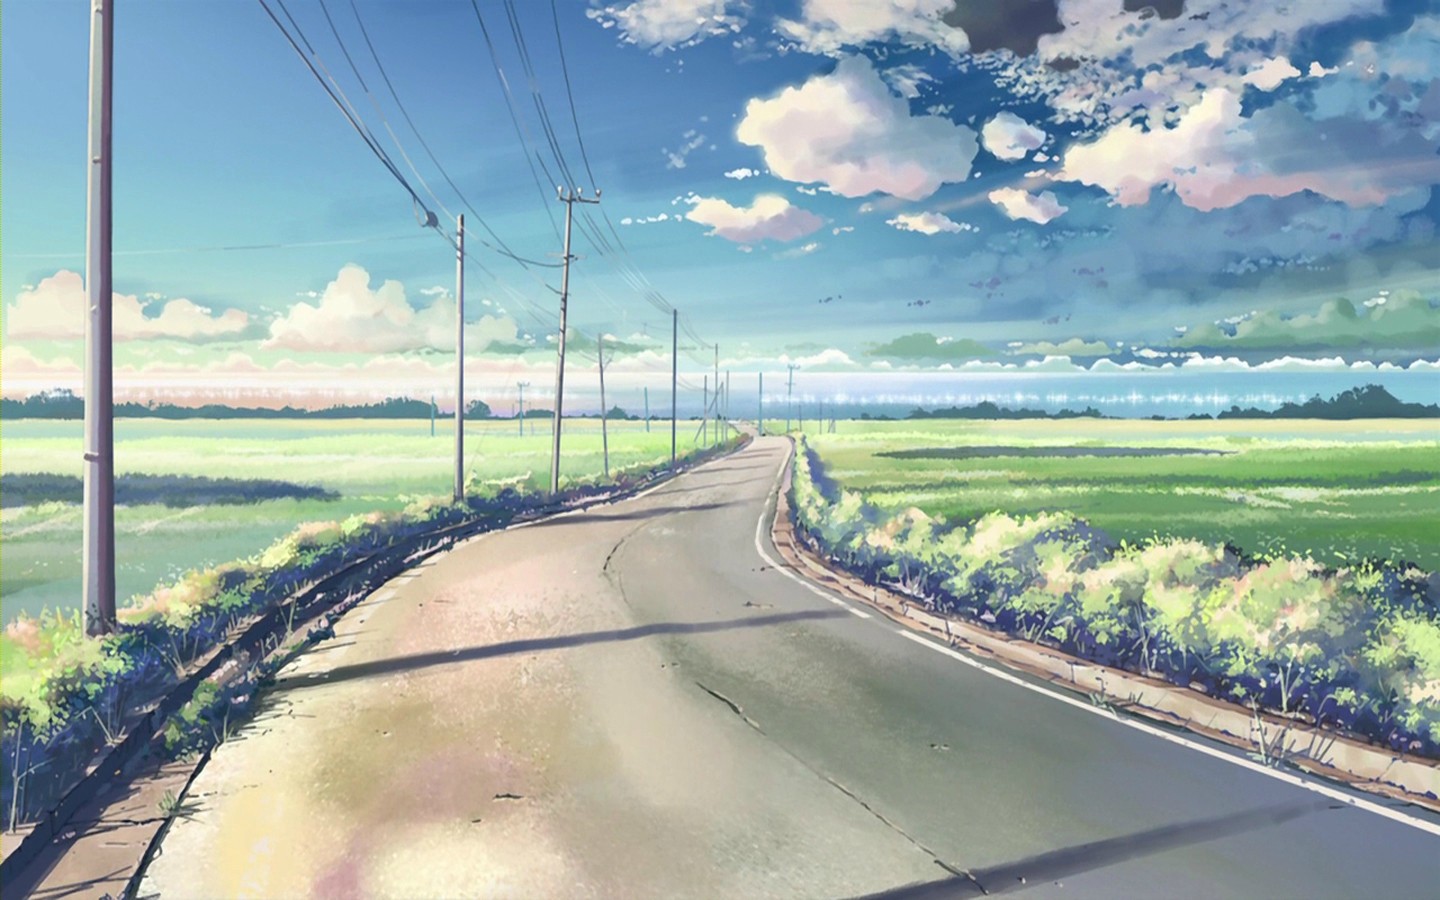 51966_anime_scenery_anime_scenery_empty_road